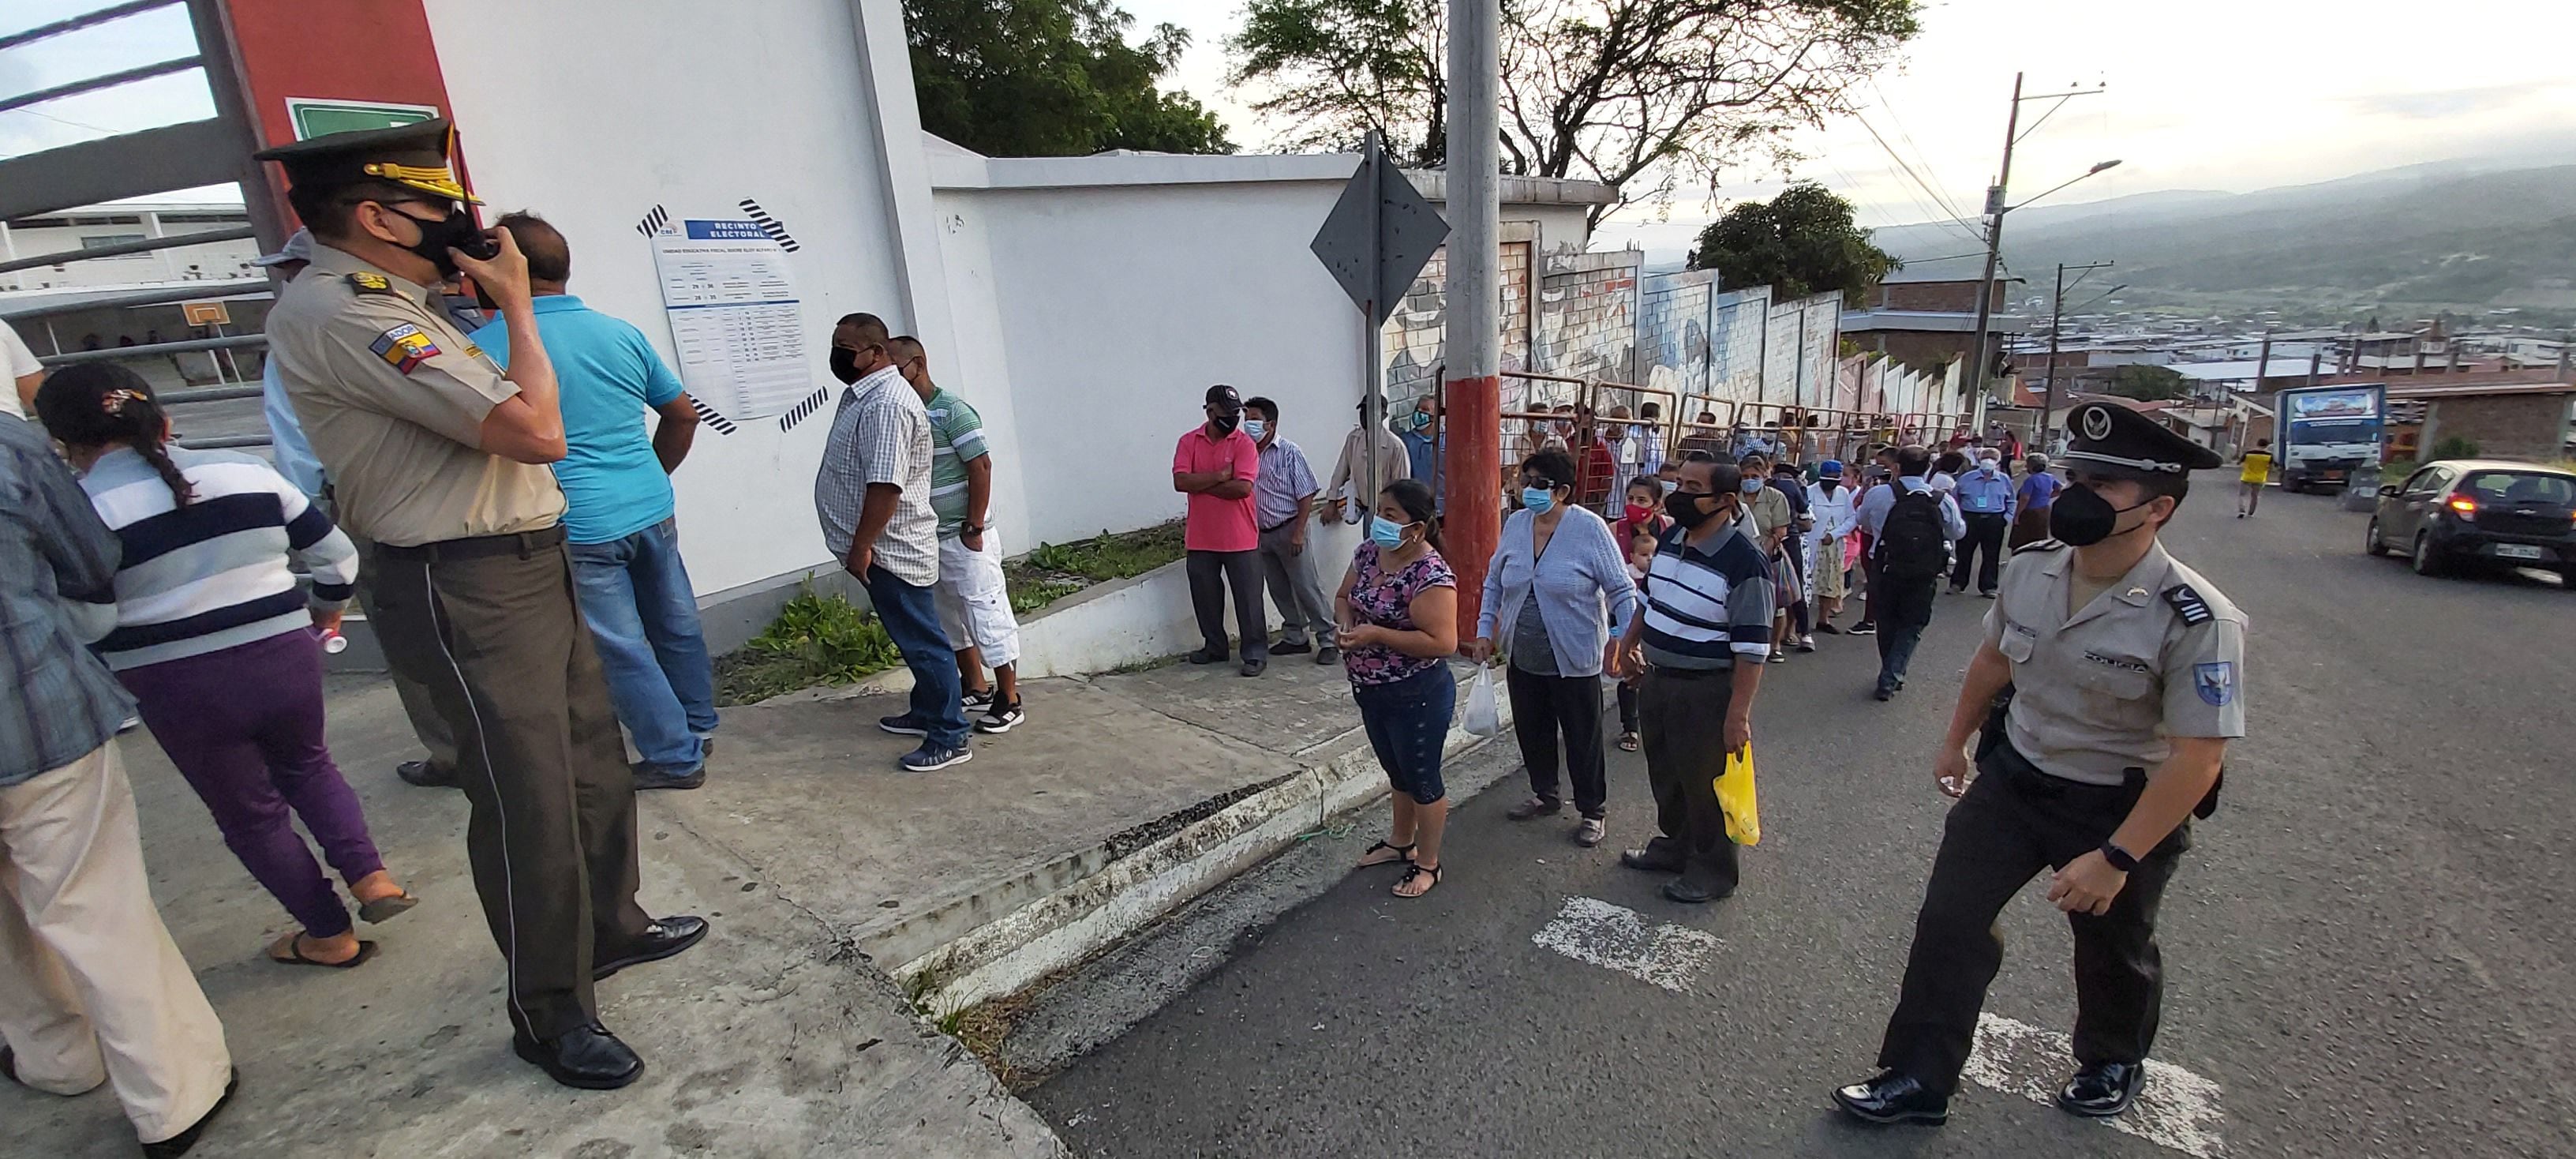 Se inician votaciones en Manabí, expectantes tras alerta de presunta intención de falso sufragio